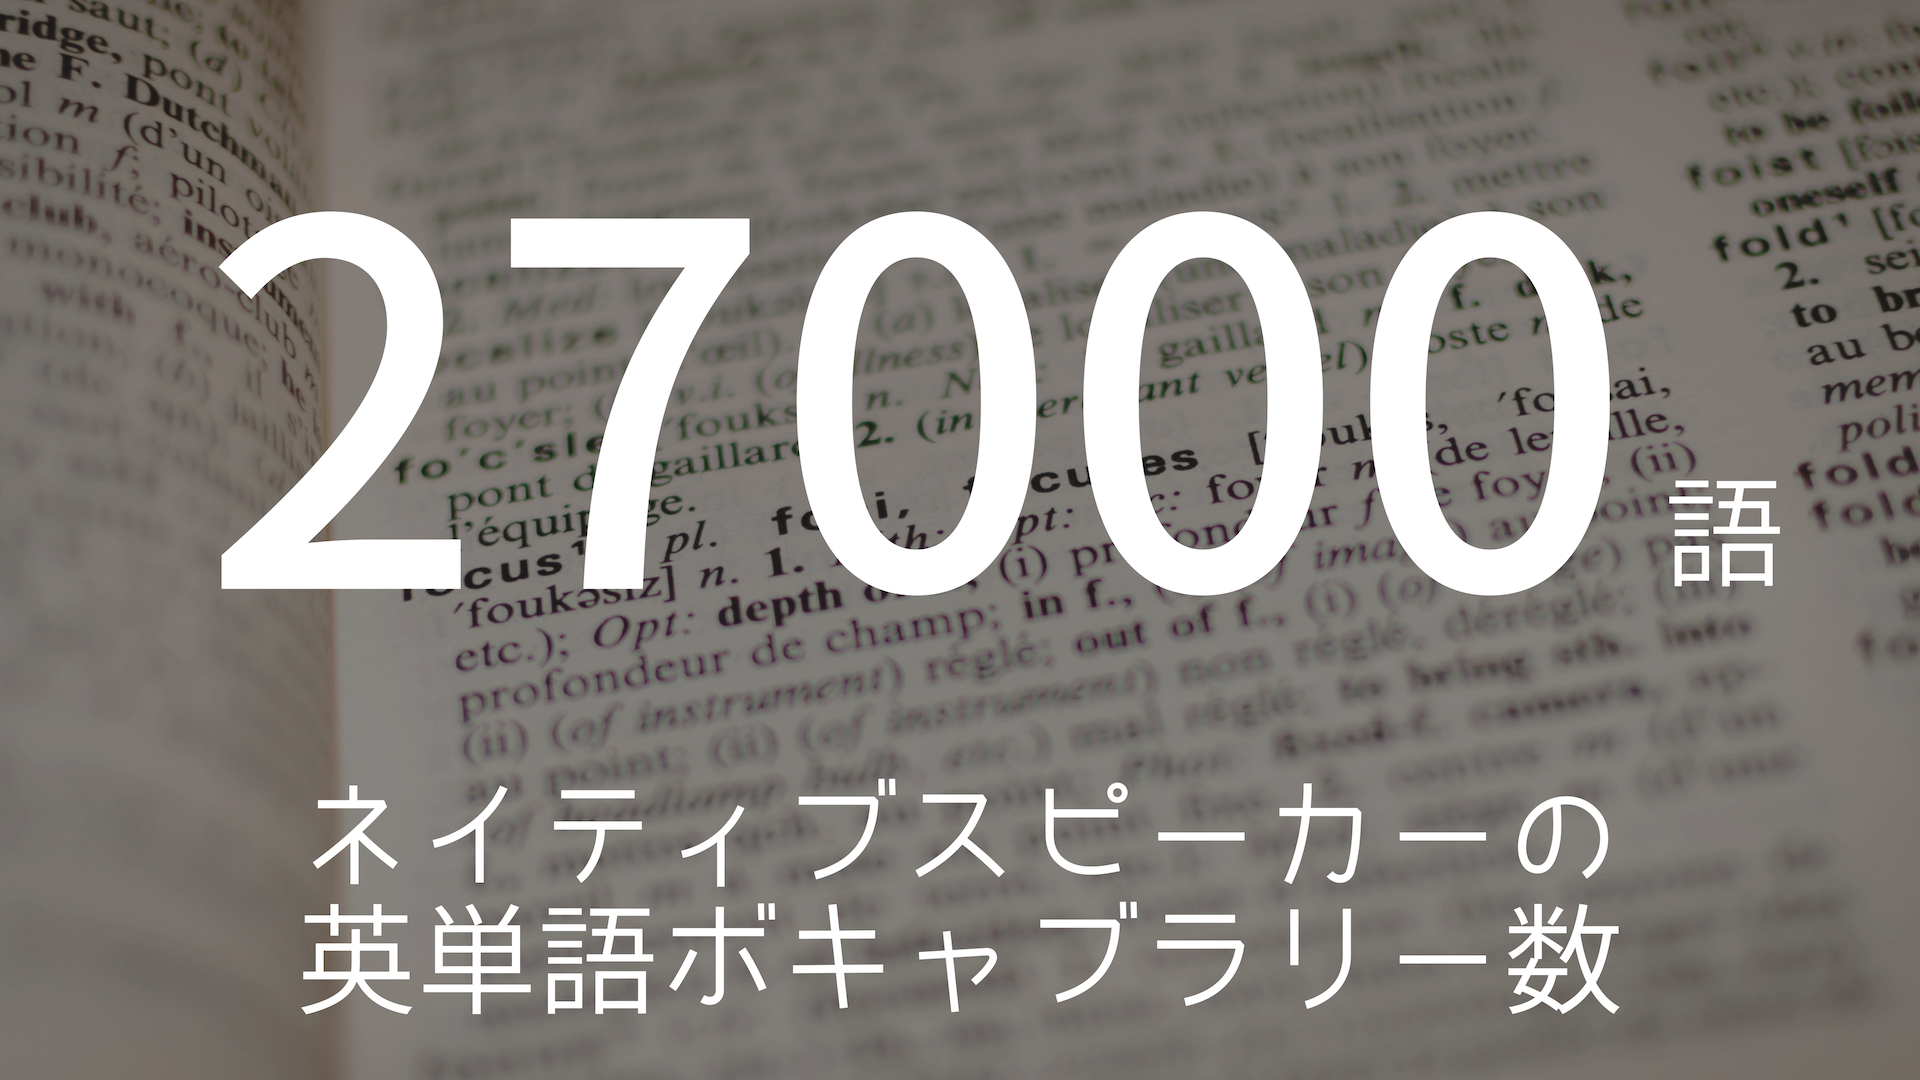 「27000語」 >>> ネイティブスピーカーの英単語ボキャブラリー数